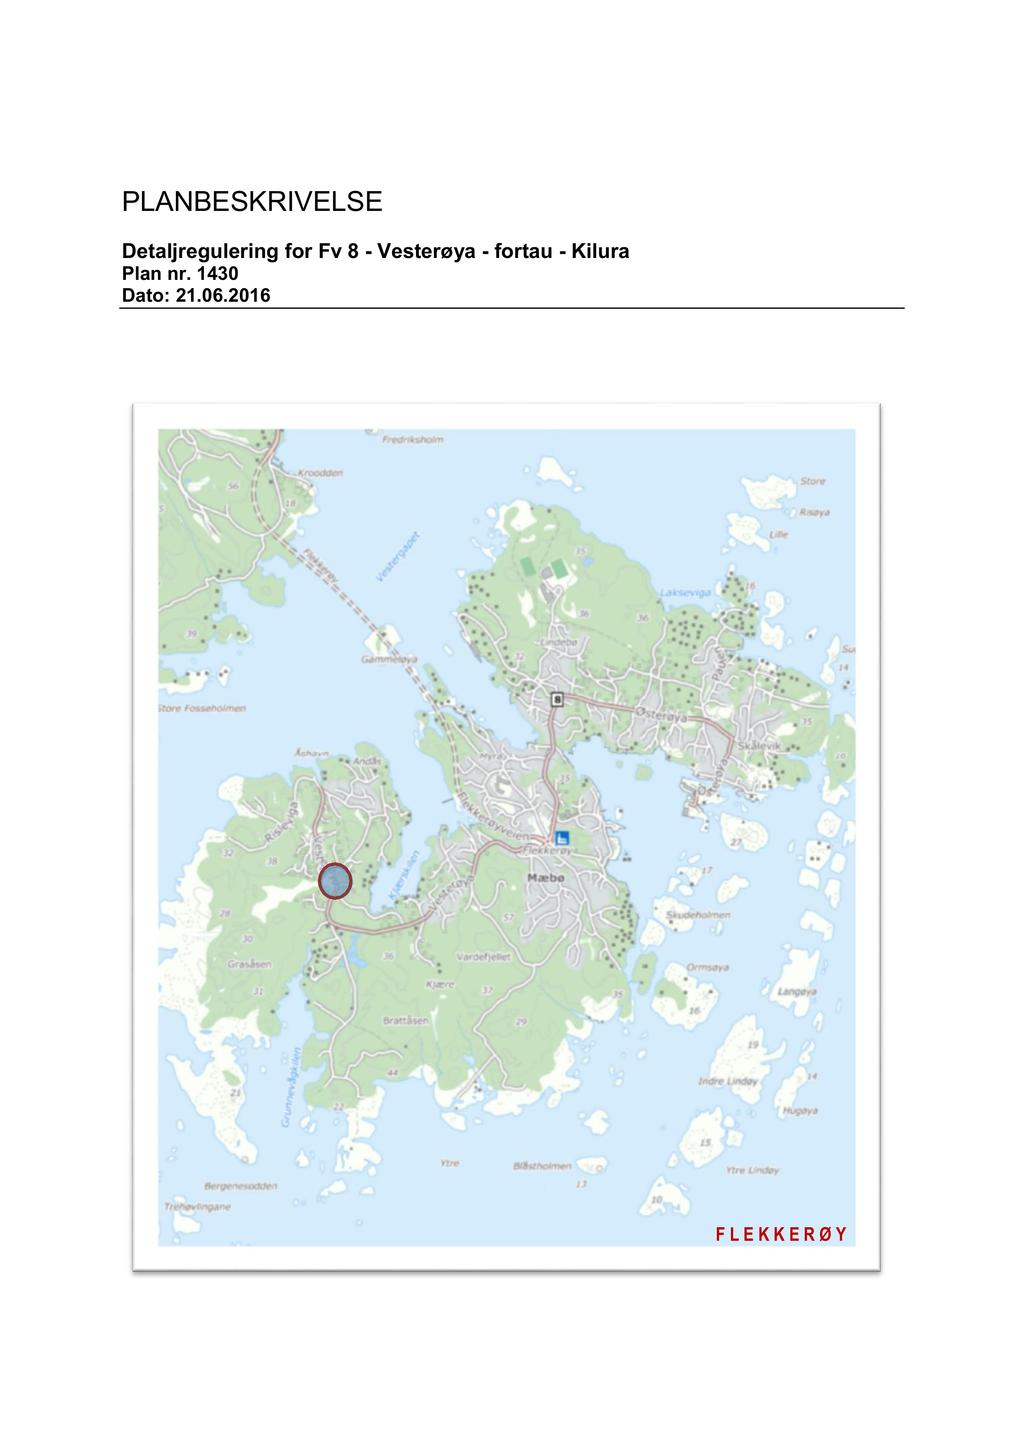 PLAN BESKRI VELSE Detaljregulering for Fv 8 Vesterøya